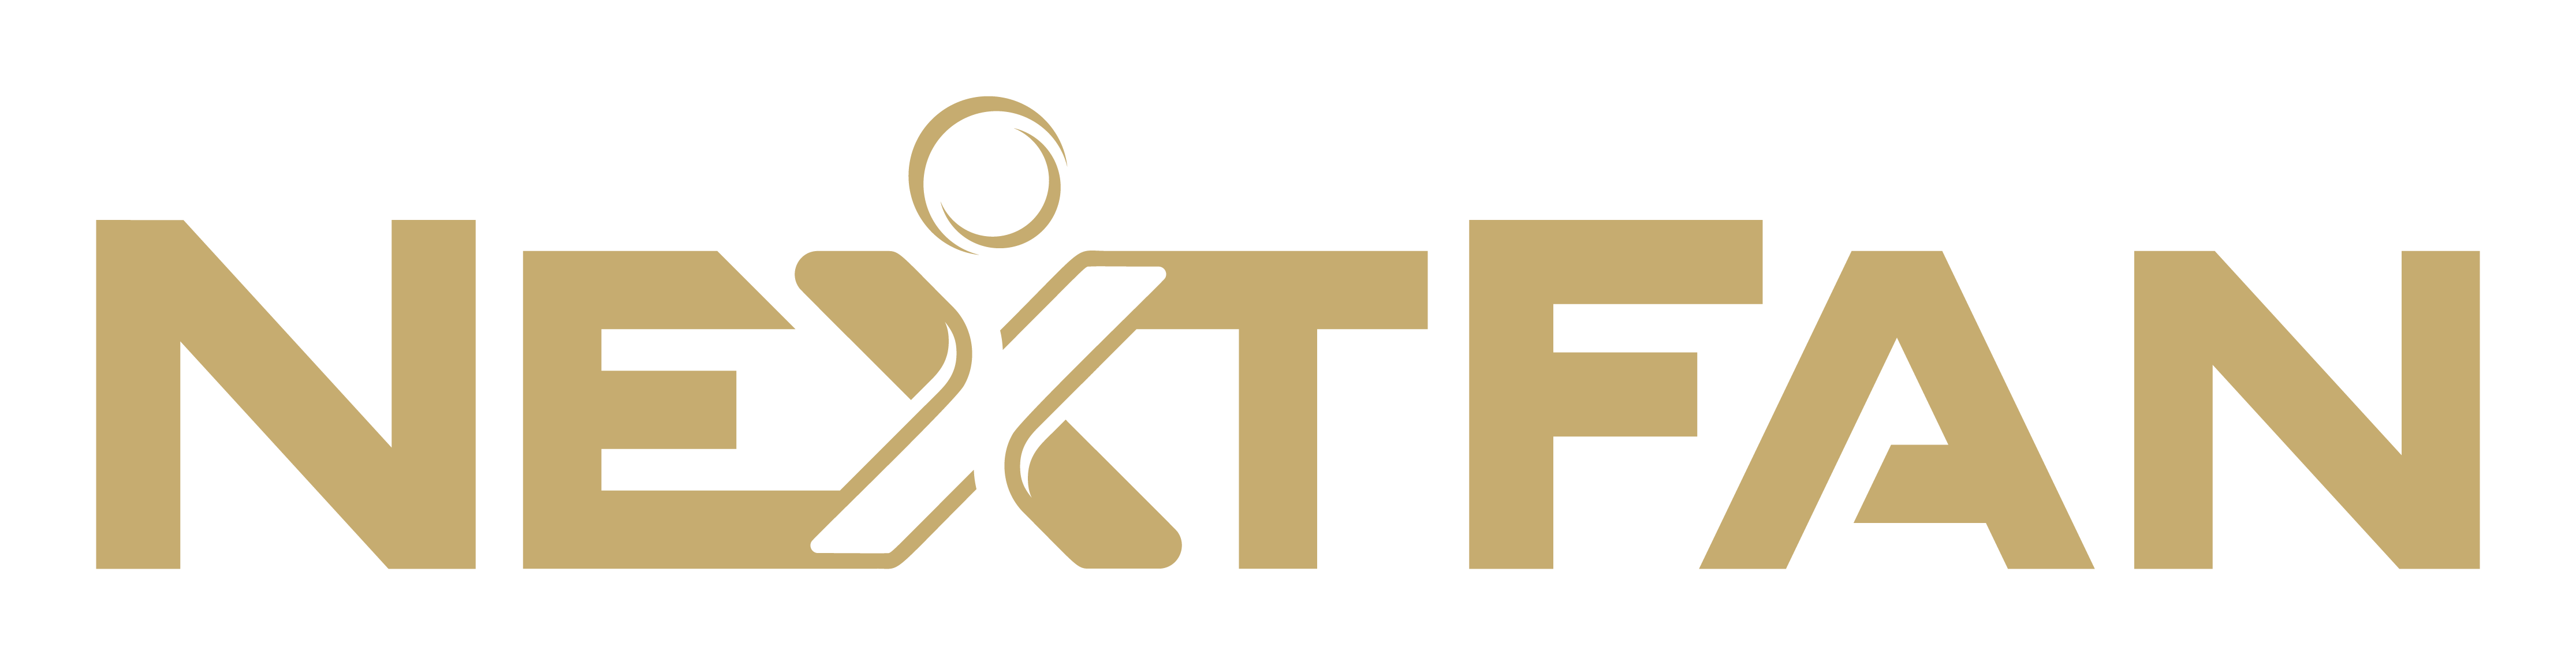 nf-logo